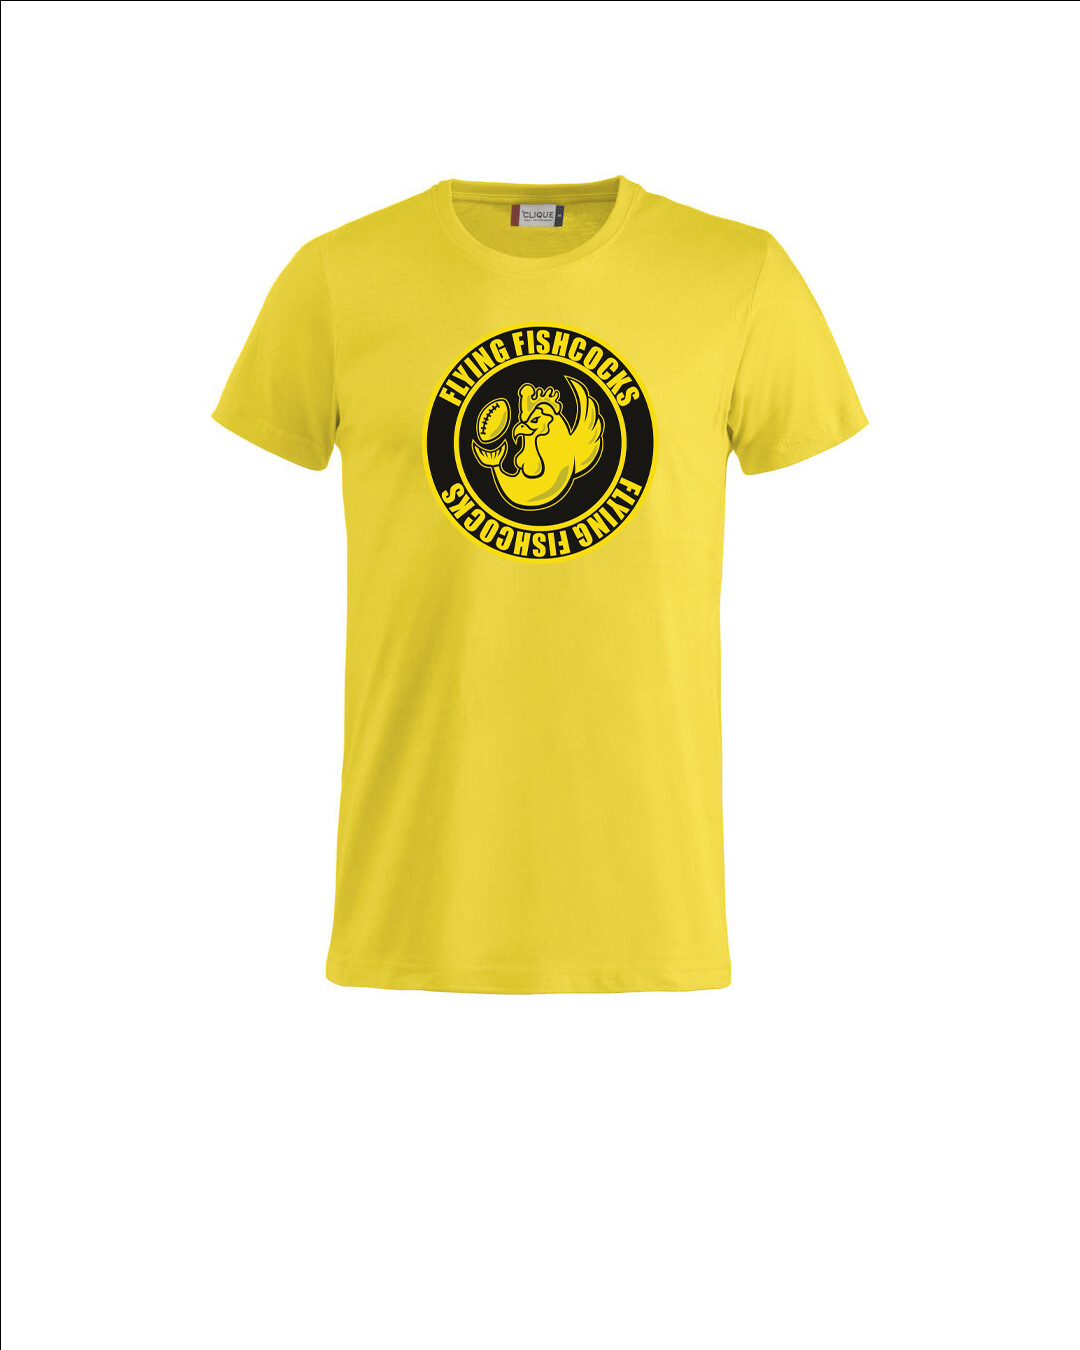 Musta Fishcocks T-paita Keltainen